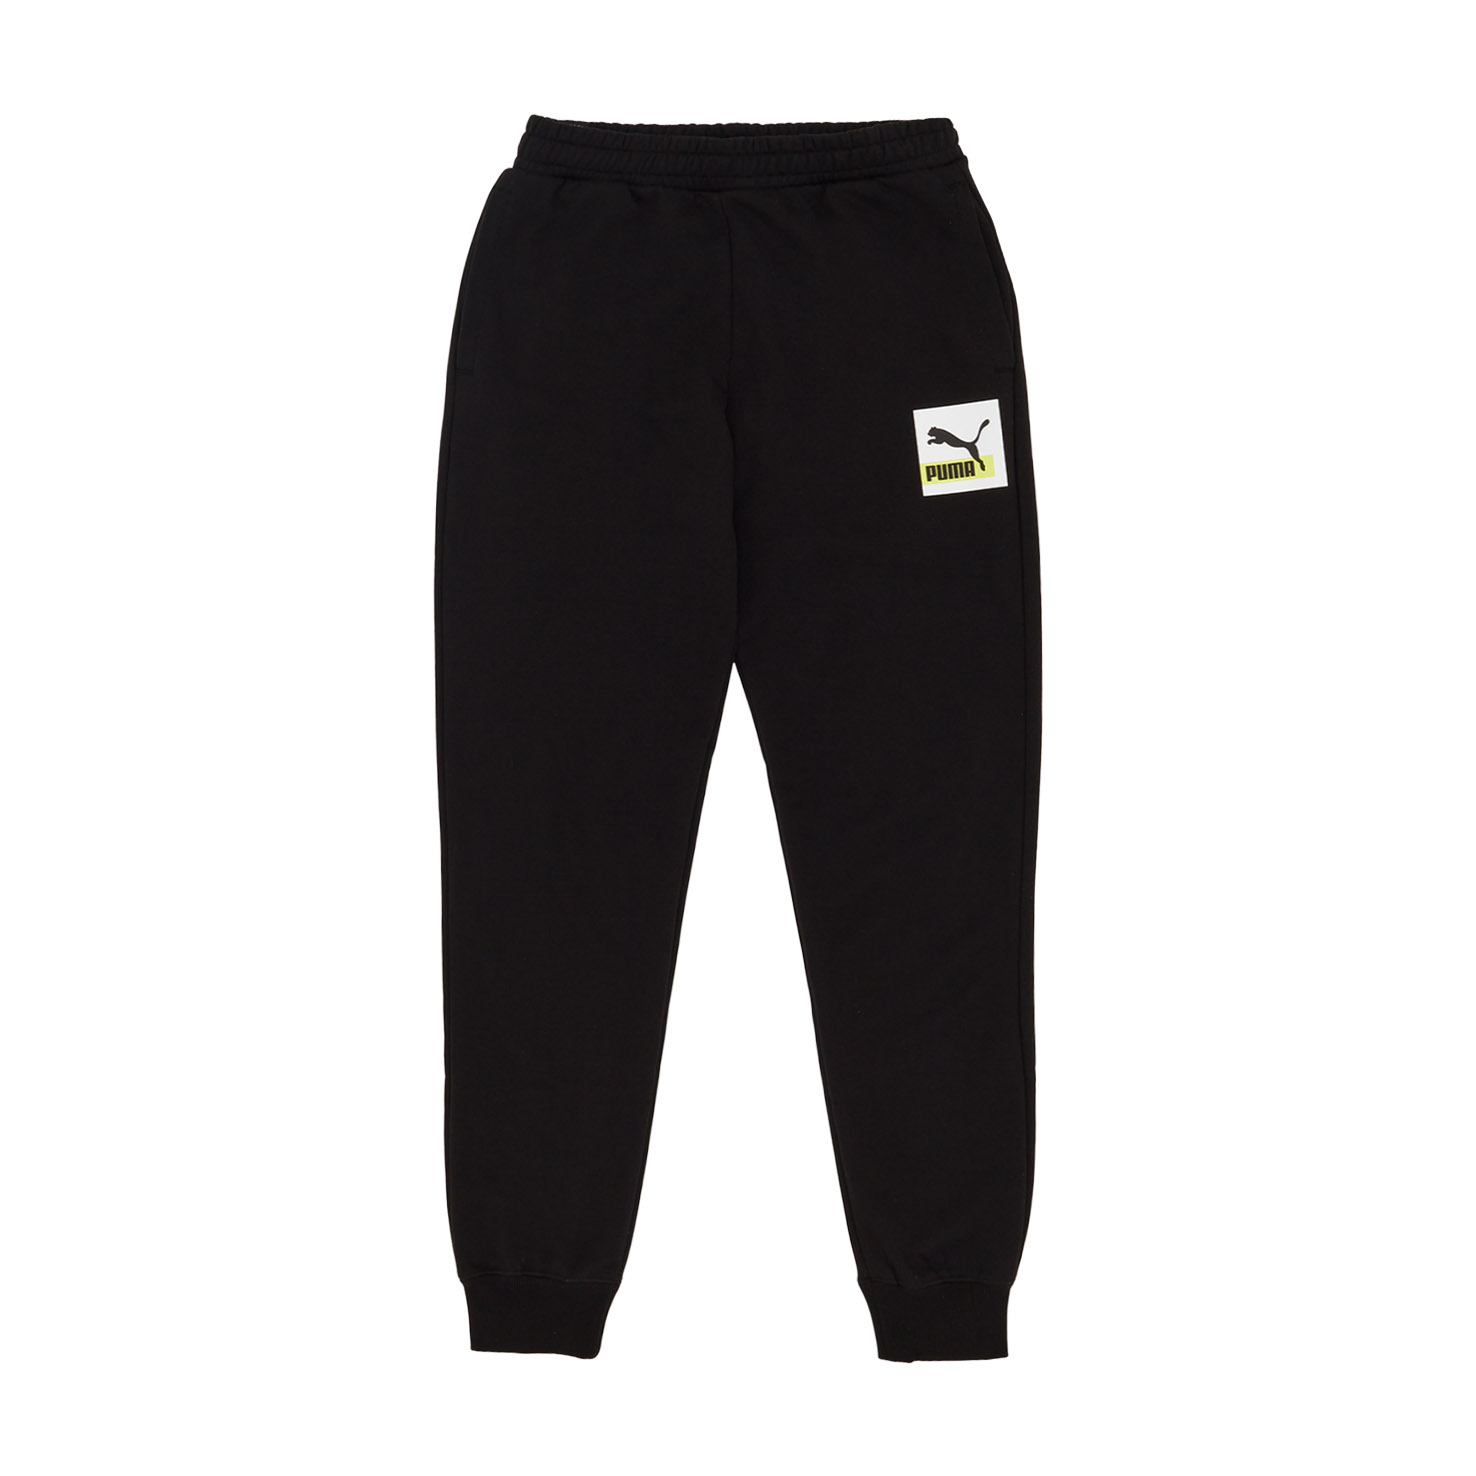 Brand Love Sweatpants PUMA, размер L, цвет черный PM533654 - фото 1